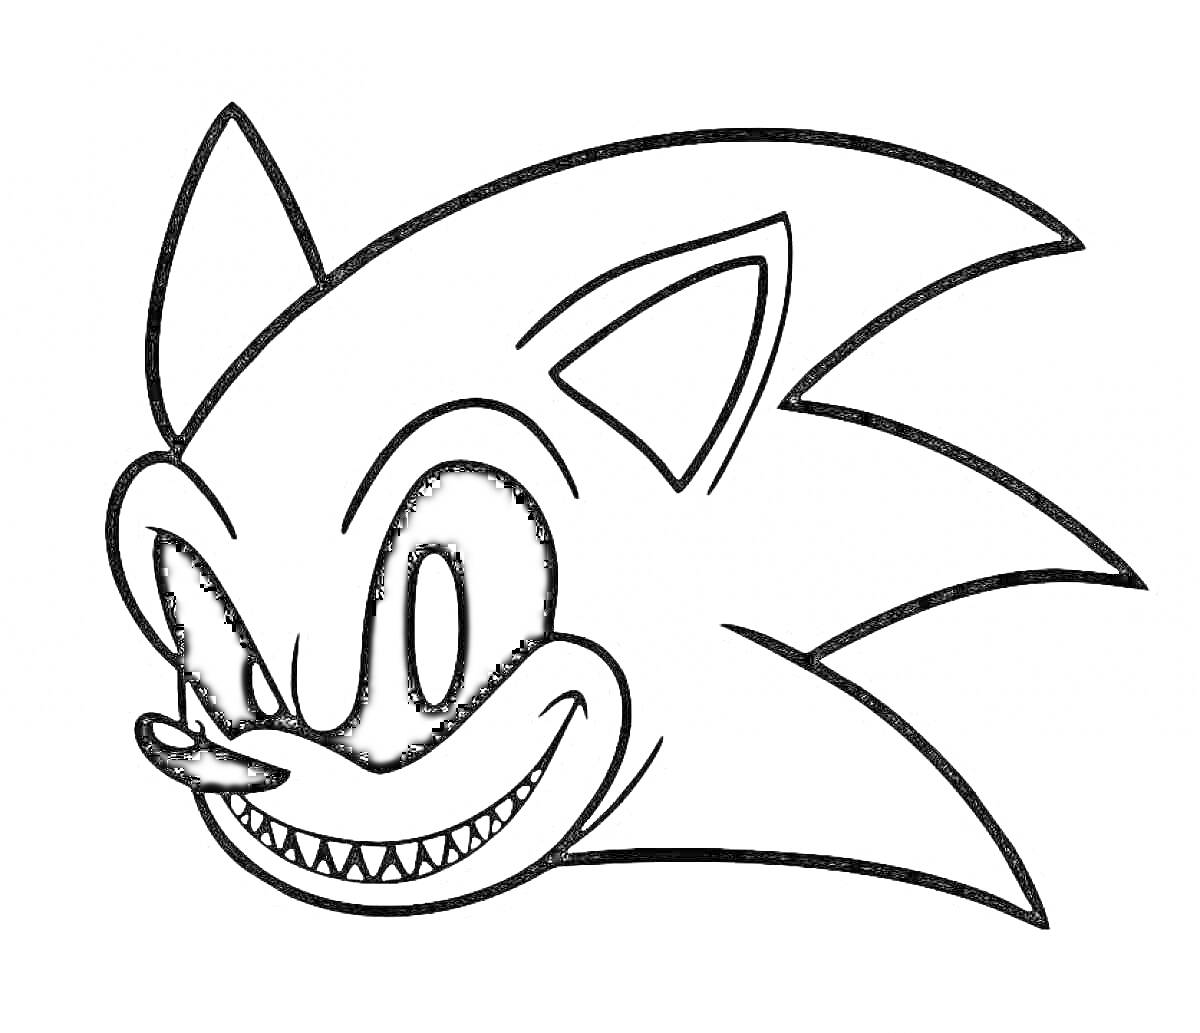 Зловещая голова Sonic EXE с большими черными глазами, заостренными ушами и широкой ухмылкой с острыми зубами